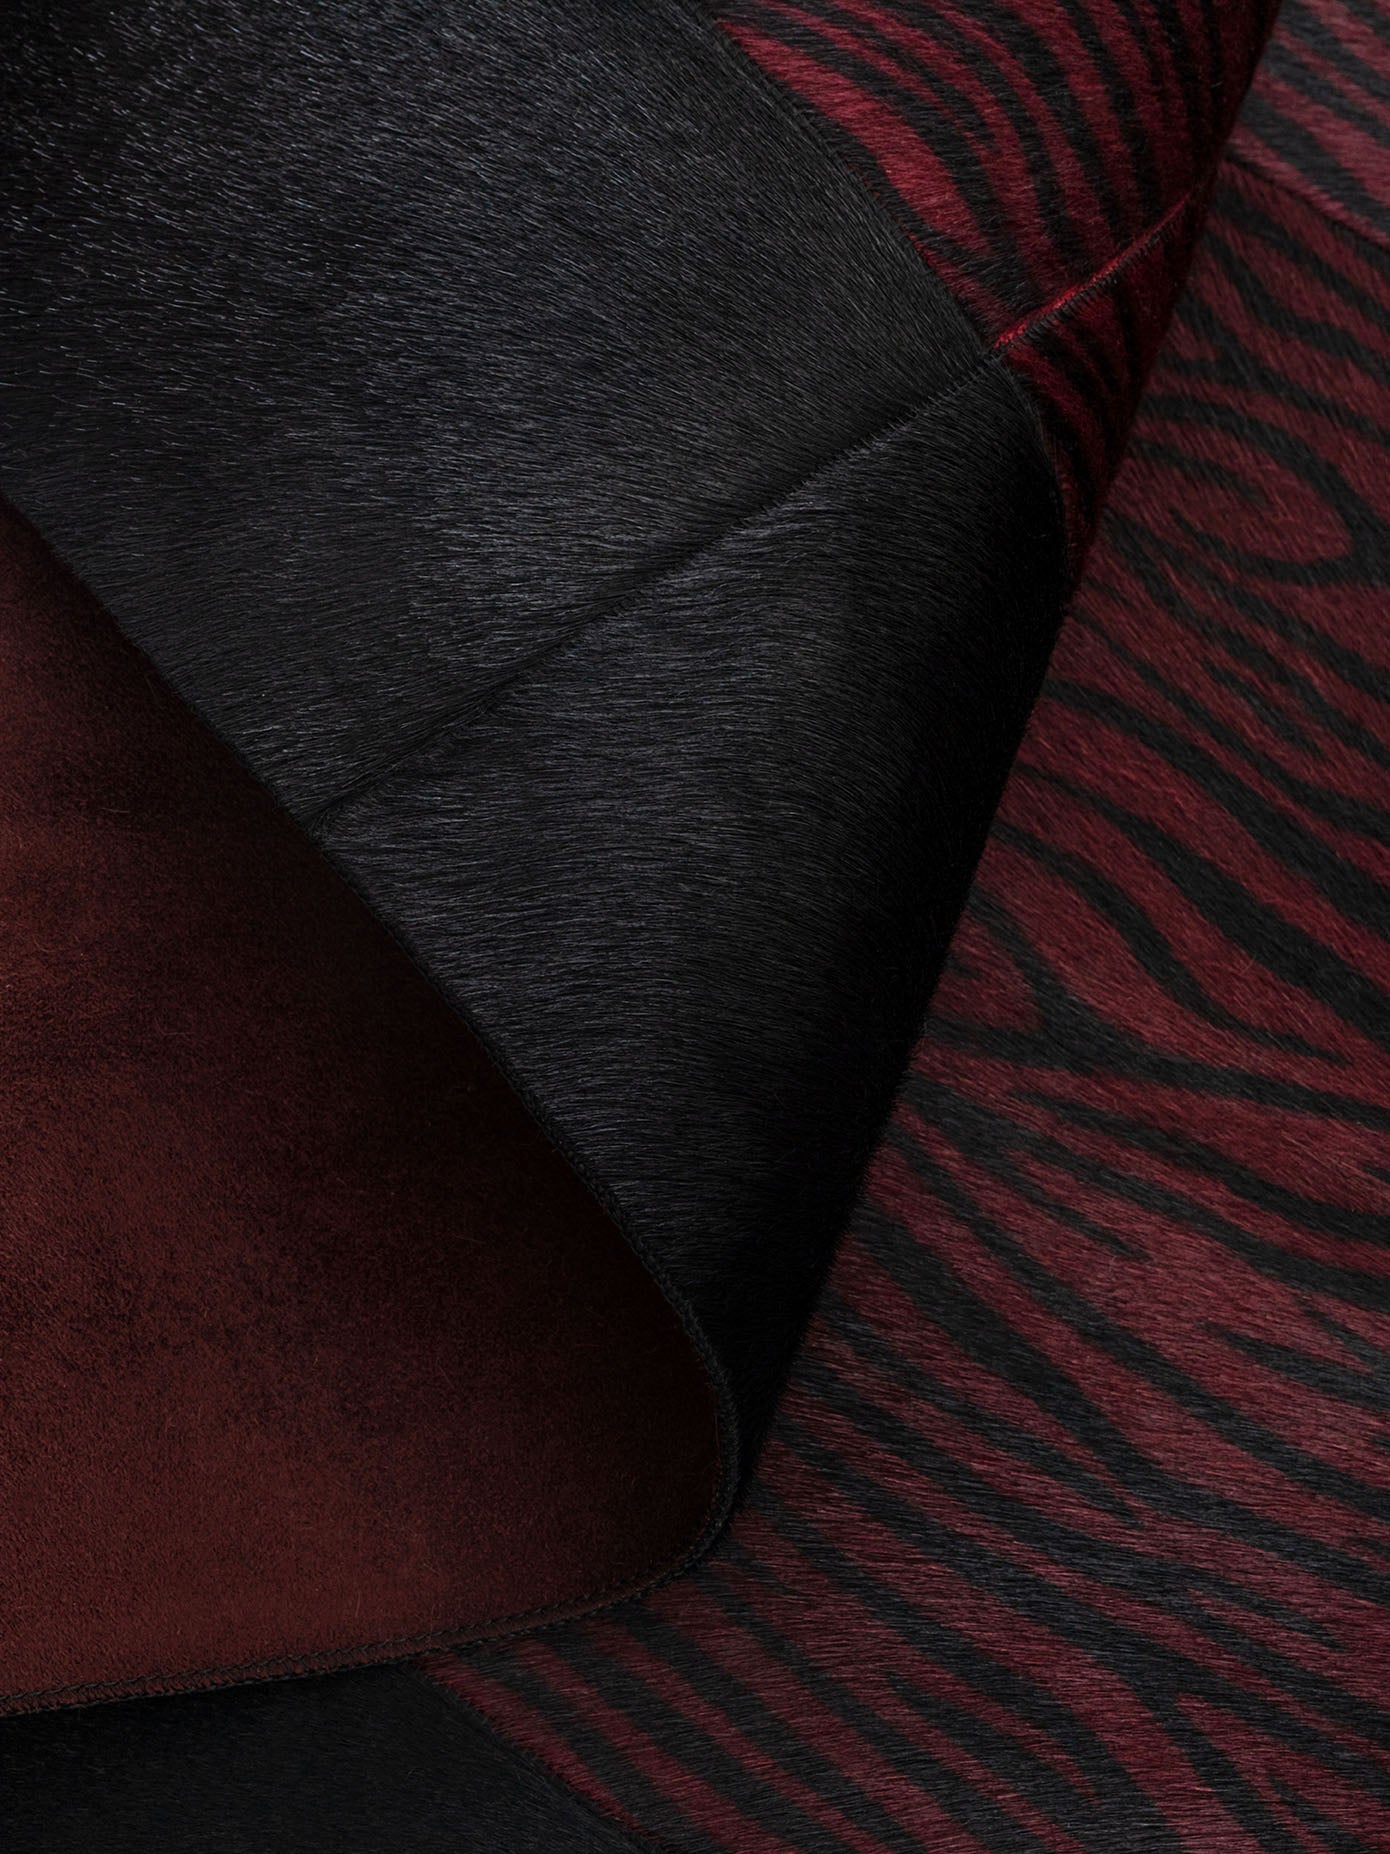 Claret Red Zebra Patterned Leather Carpet